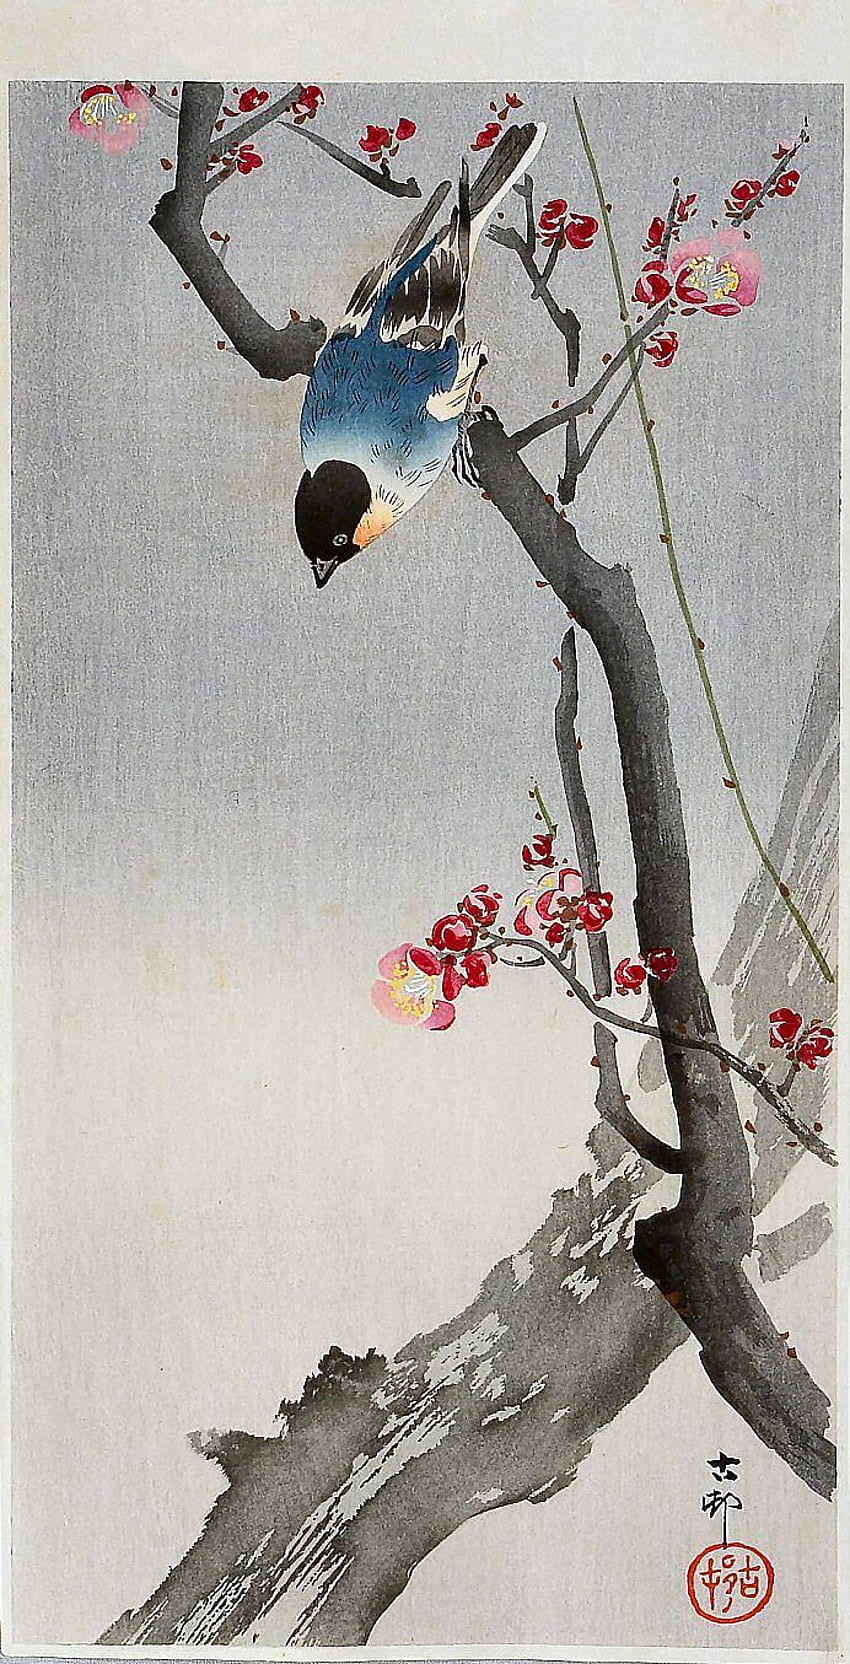 梅の木にとまる青い鳥。 大原古邨、日本人と日本、日本の鳥の芸術 HD電話の壁紙